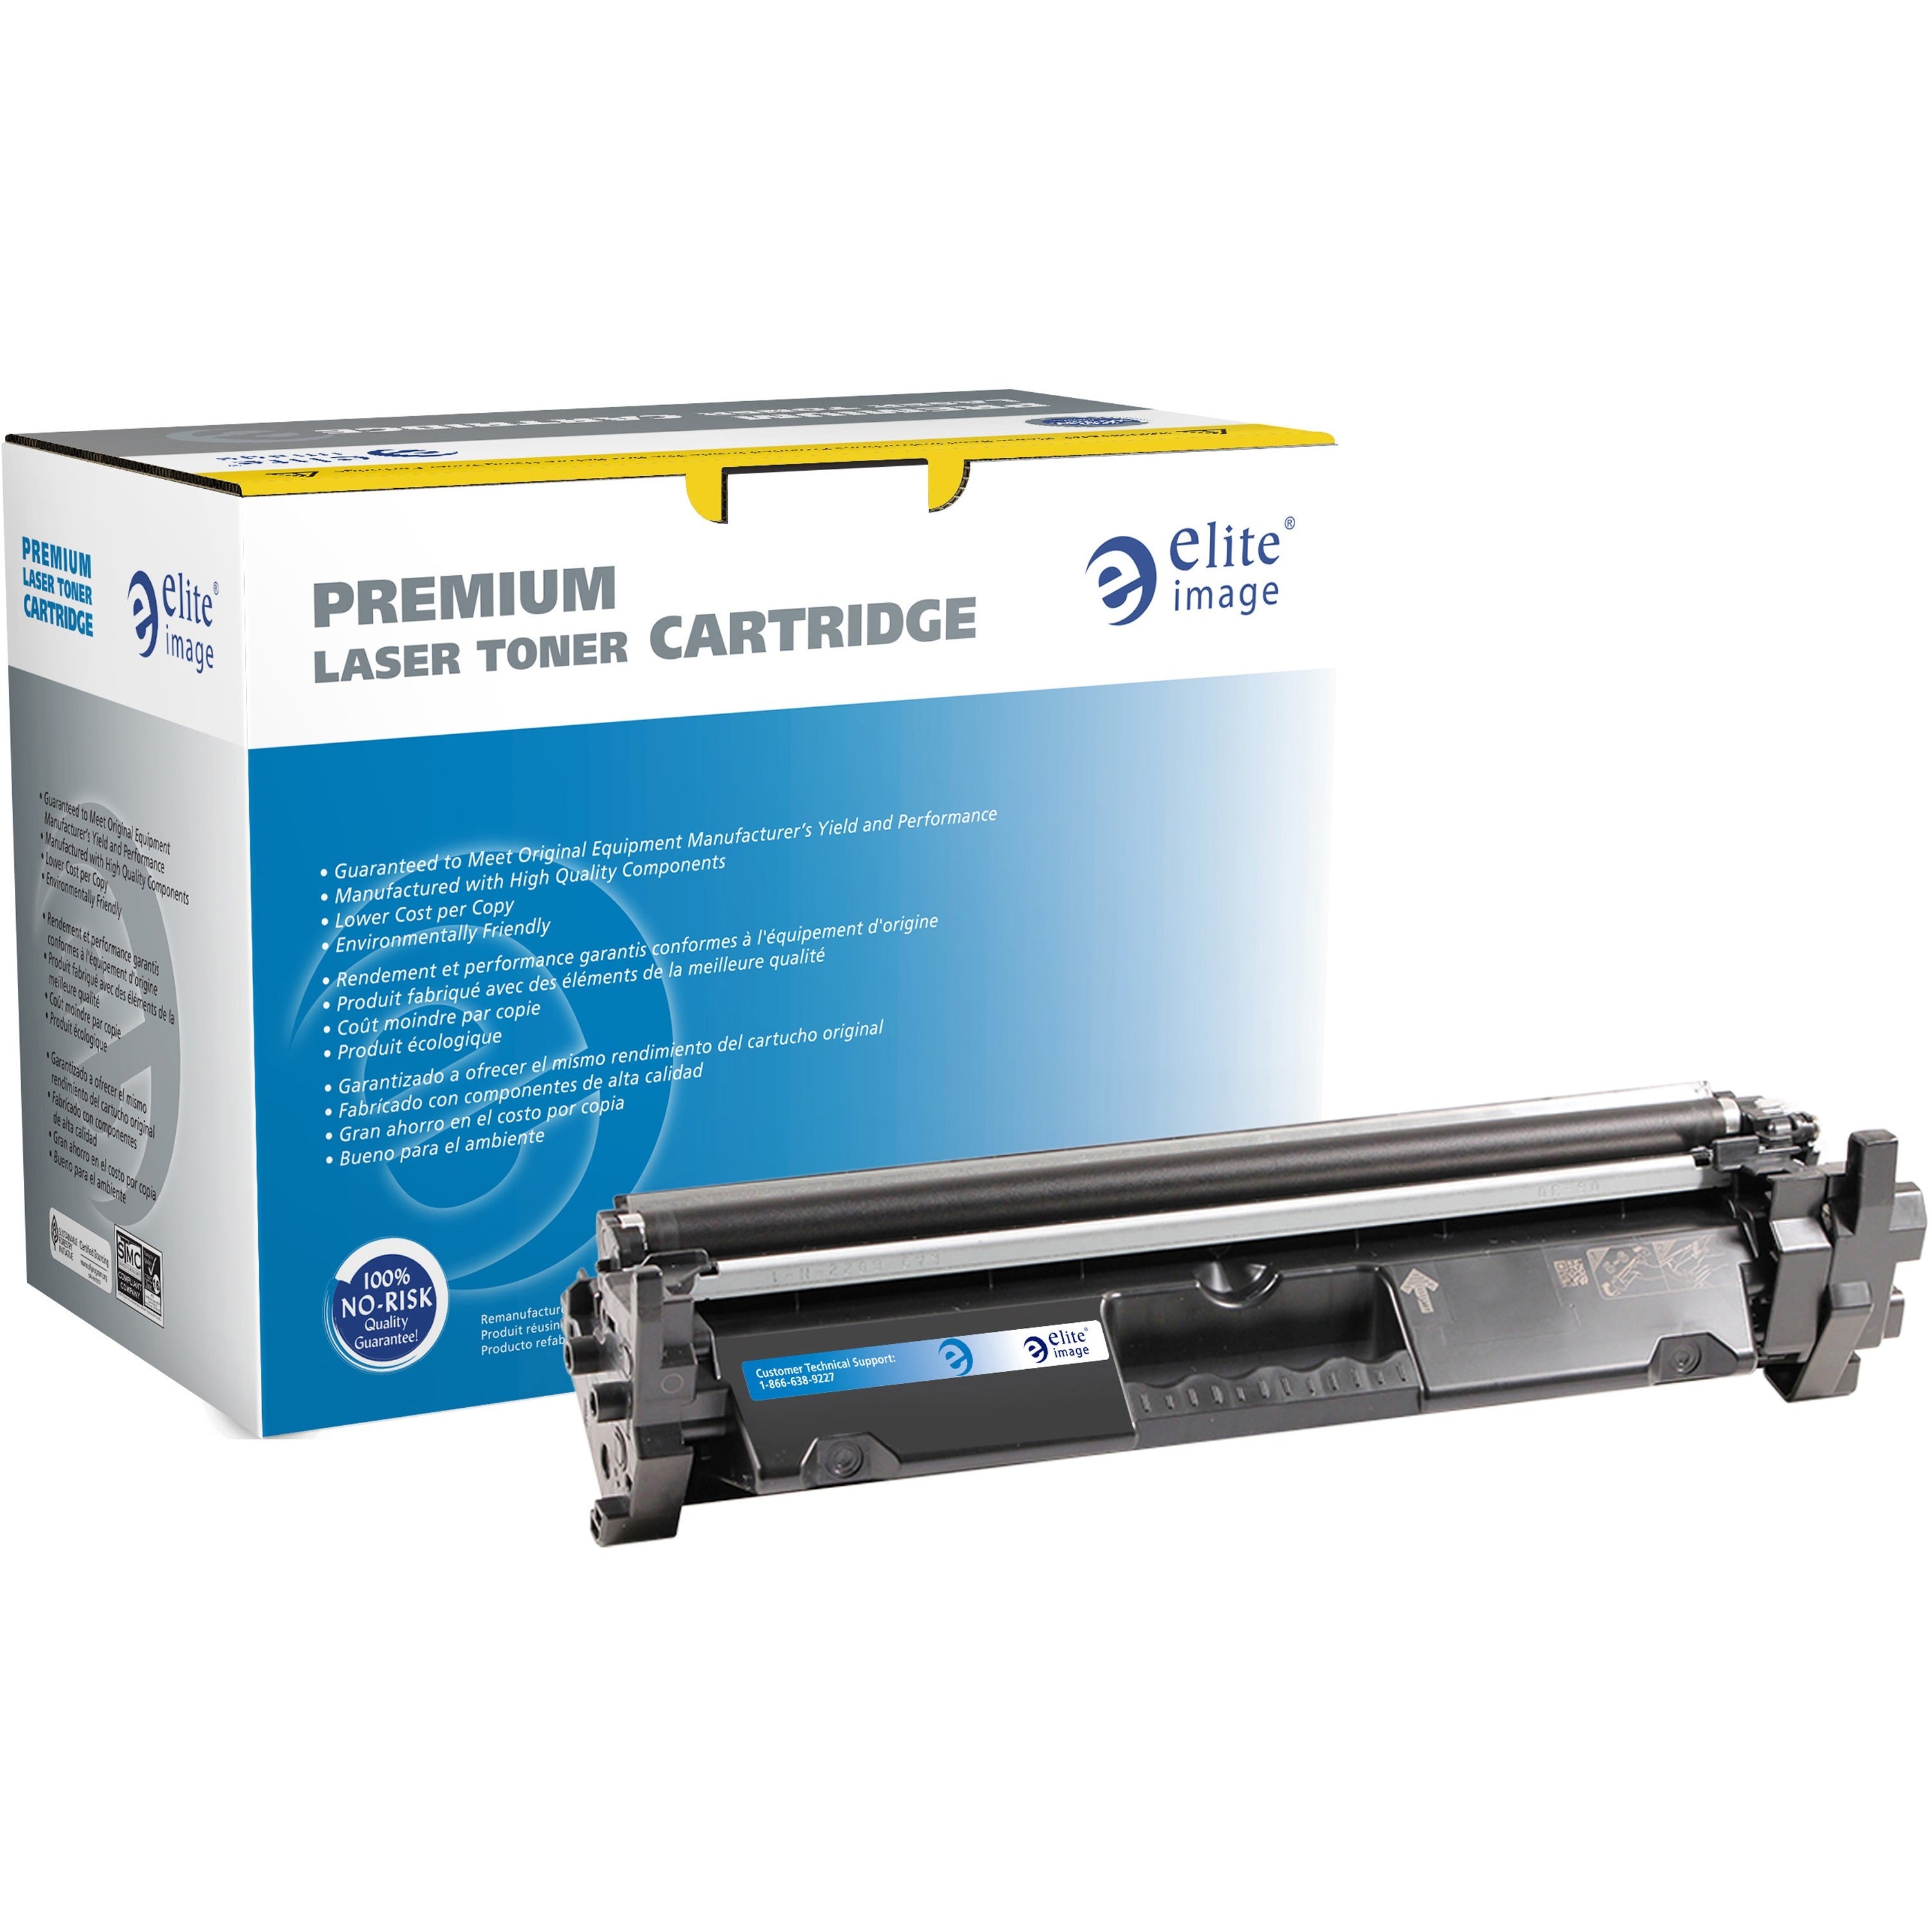 elite-image-remanufactured-laser-toner-cartridge-alternative-for-hp-17a-black-1-each-1600-pages_eli02805 - 1